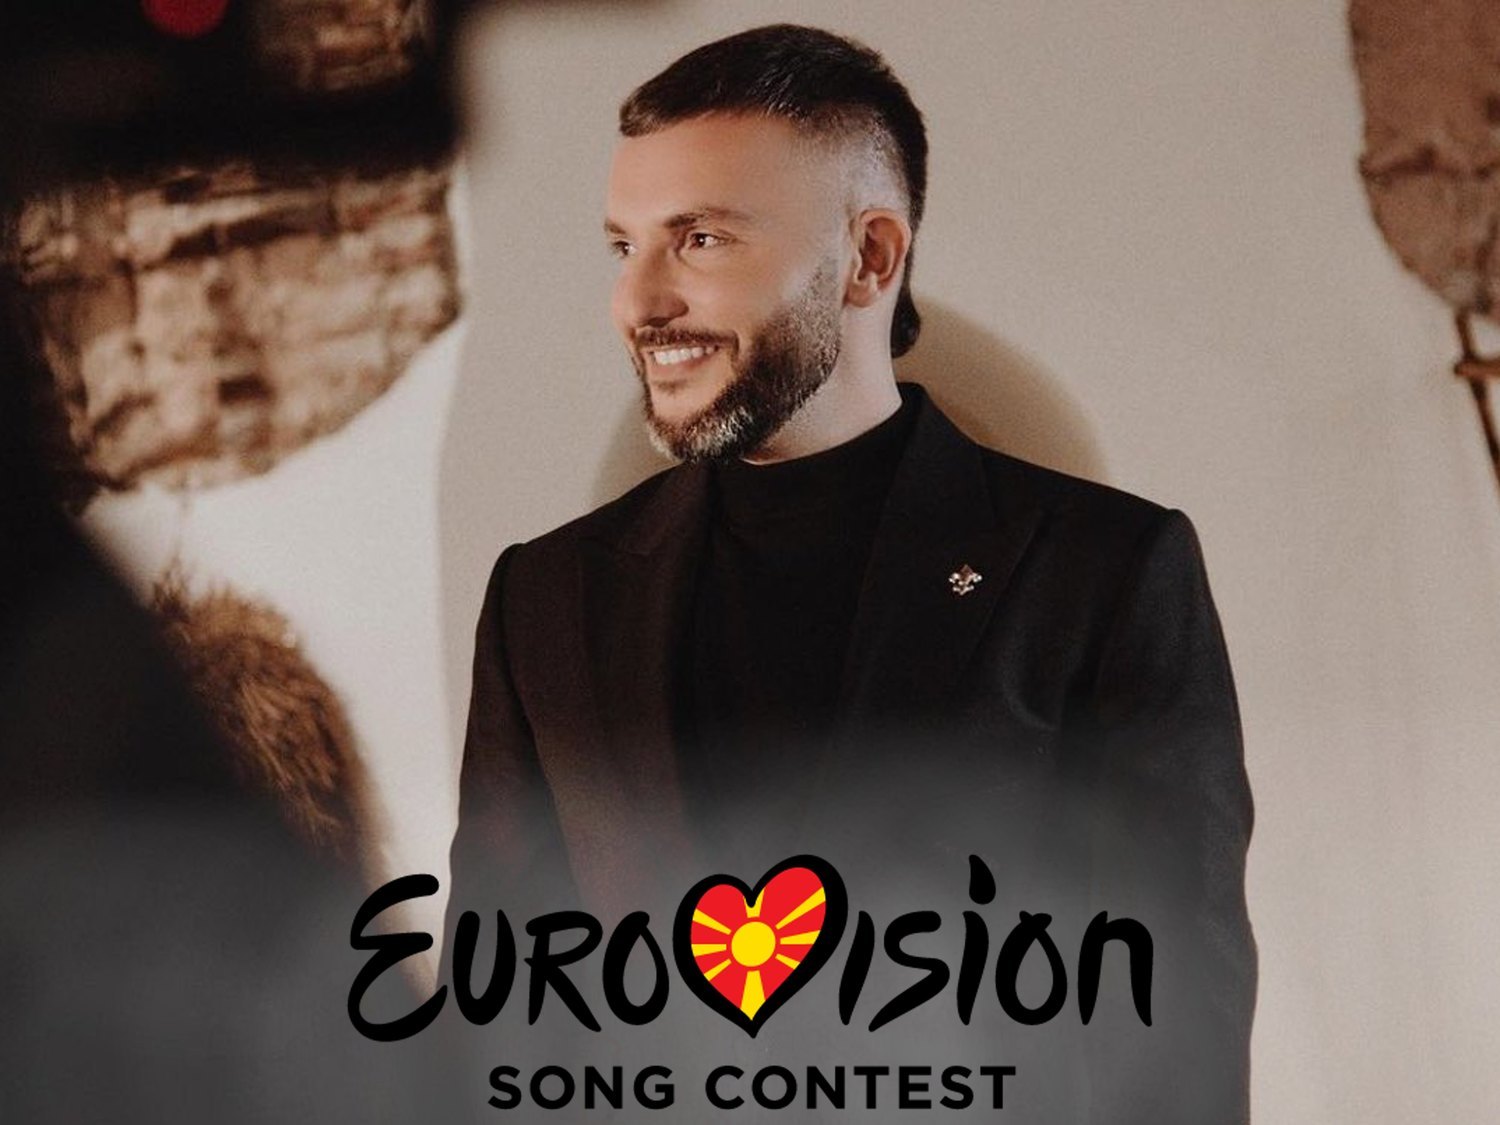 Macedonia del Norte plantea retirarse de Eurovisión 2021 tras presiones de fuerzas nacionalistas en el país